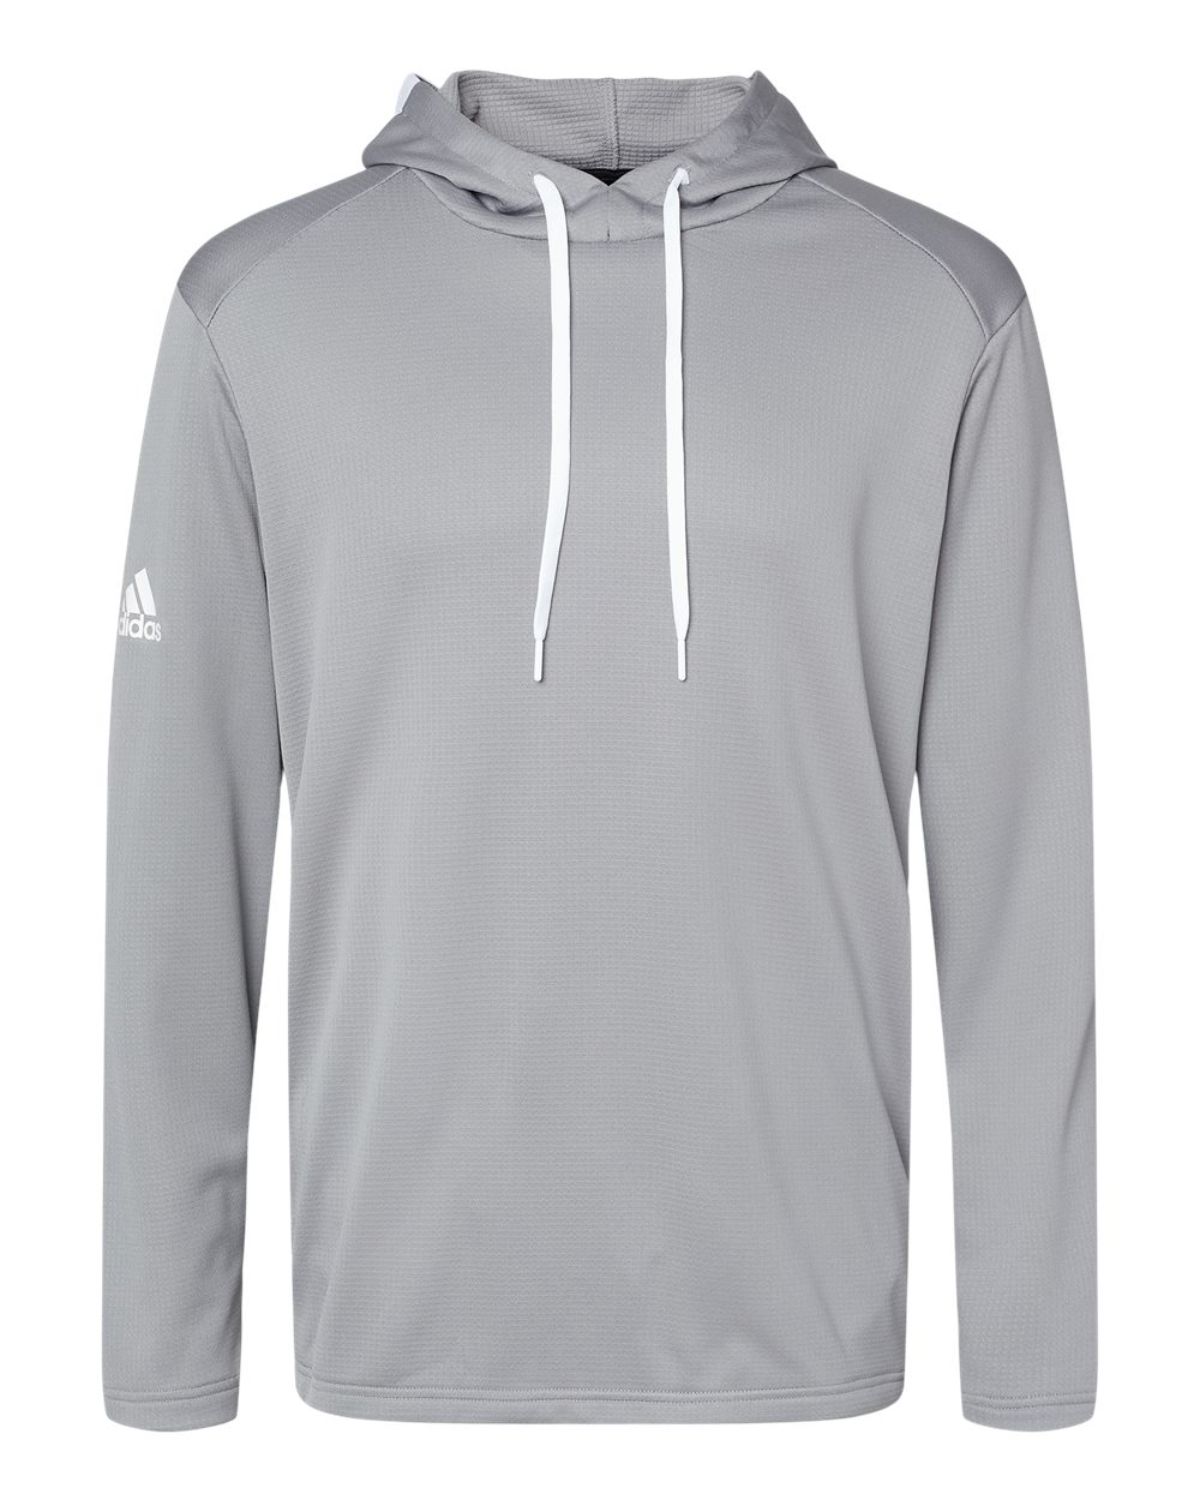 Adidas Golf A530 Textured Mixed Media Hooded Sweatshirt